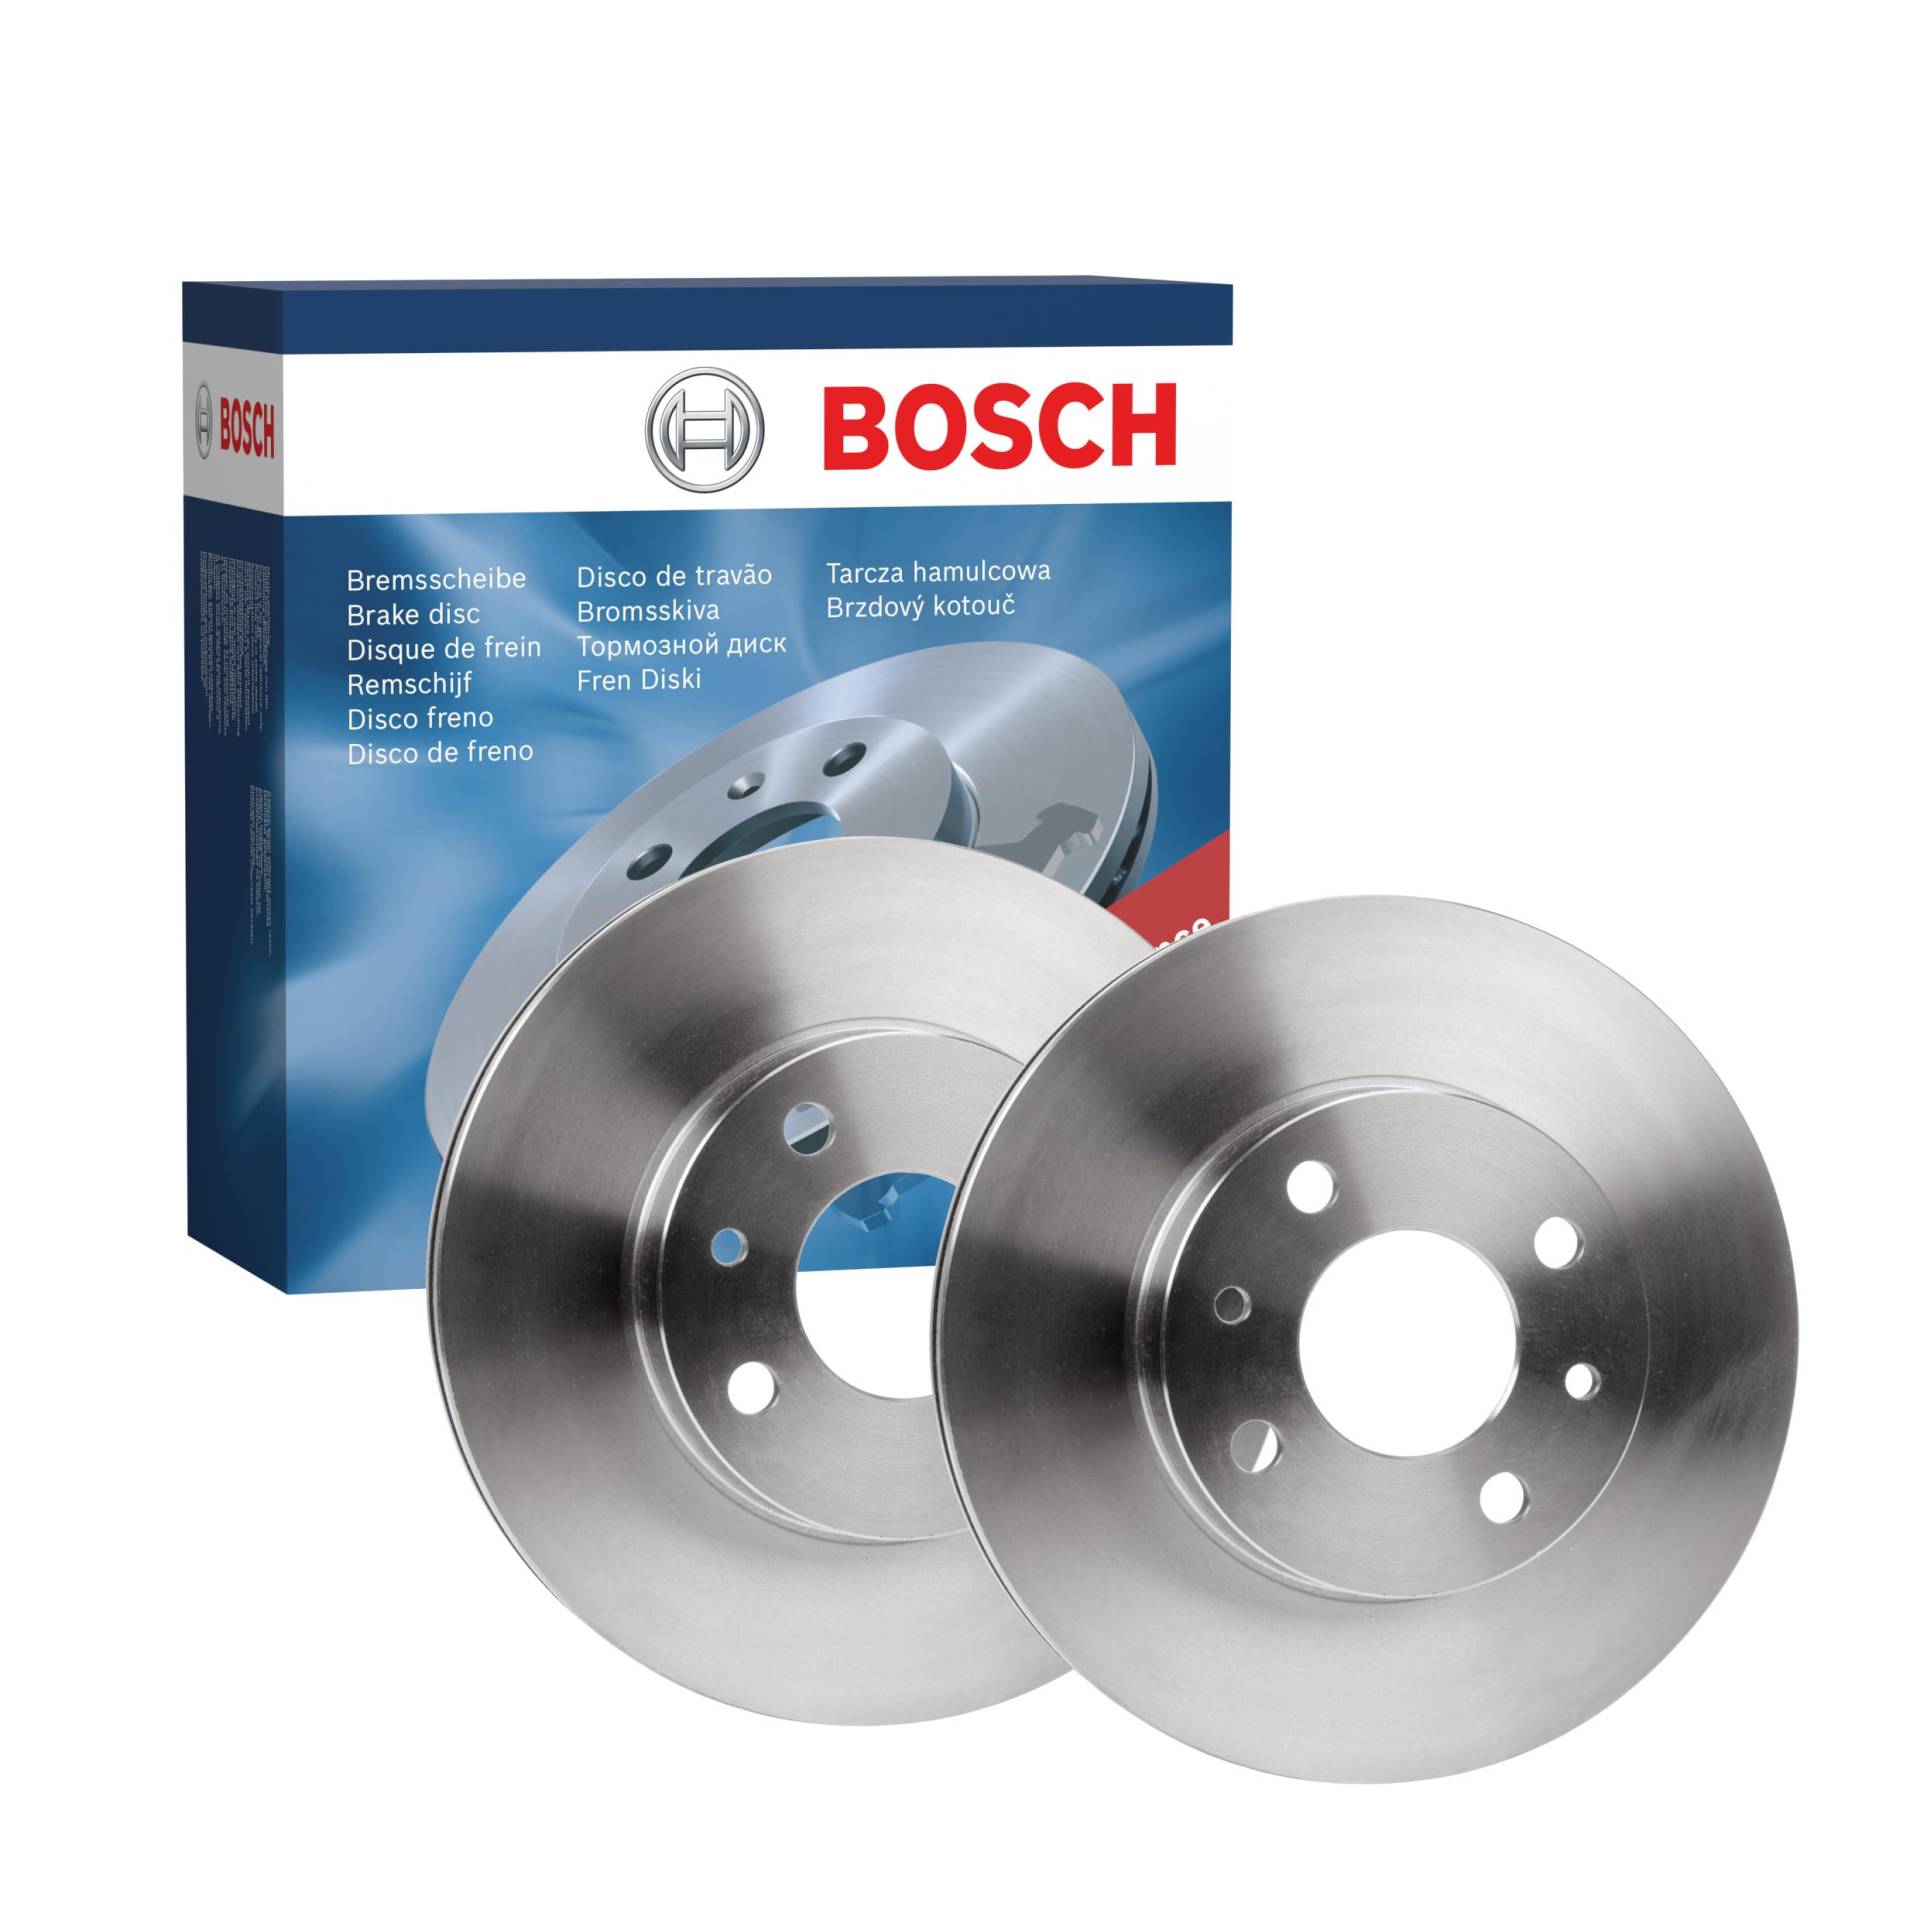 Bosch BD1961 Bremsscheiben - Vorderachse - ECE-R90 Zertifizierung - zwei Bremsscheiben pro Set von Bosch Automotive